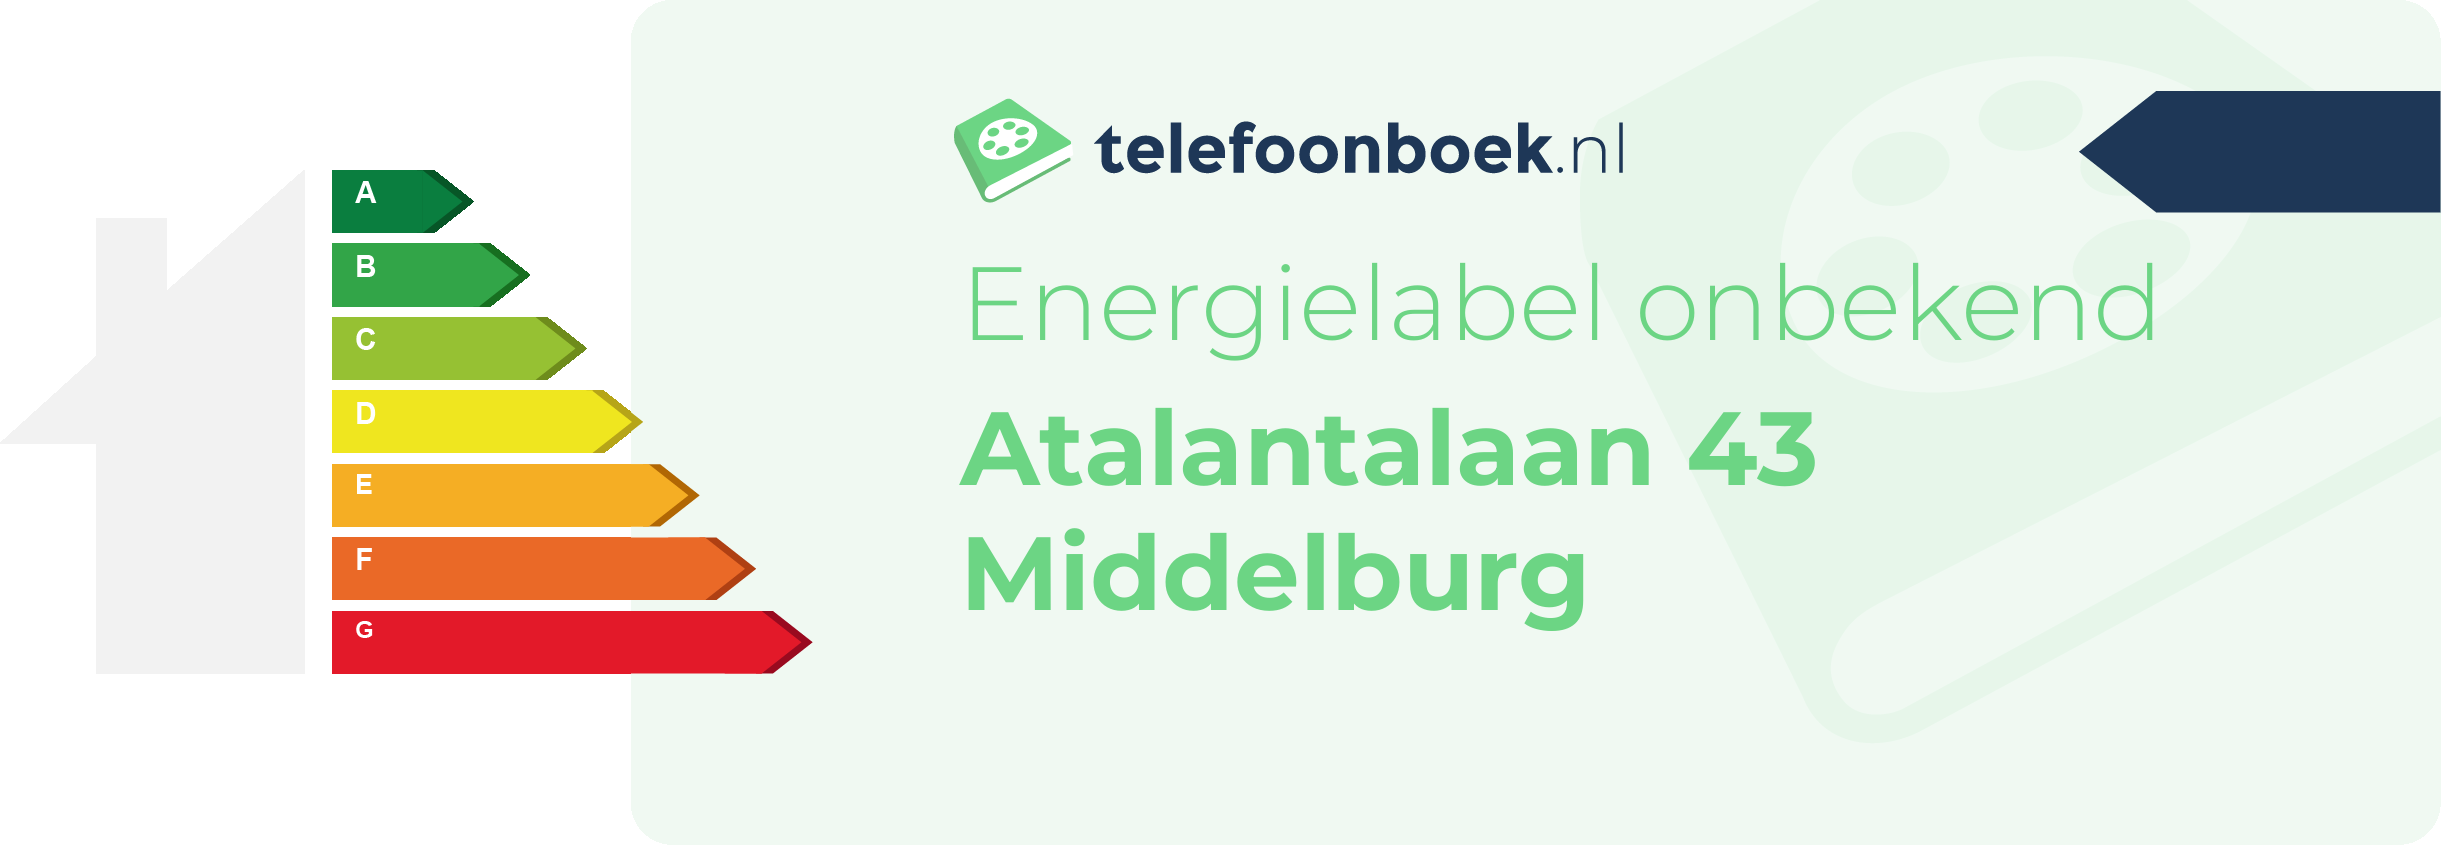 Energielabel Atalantalaan 43 Middelburg